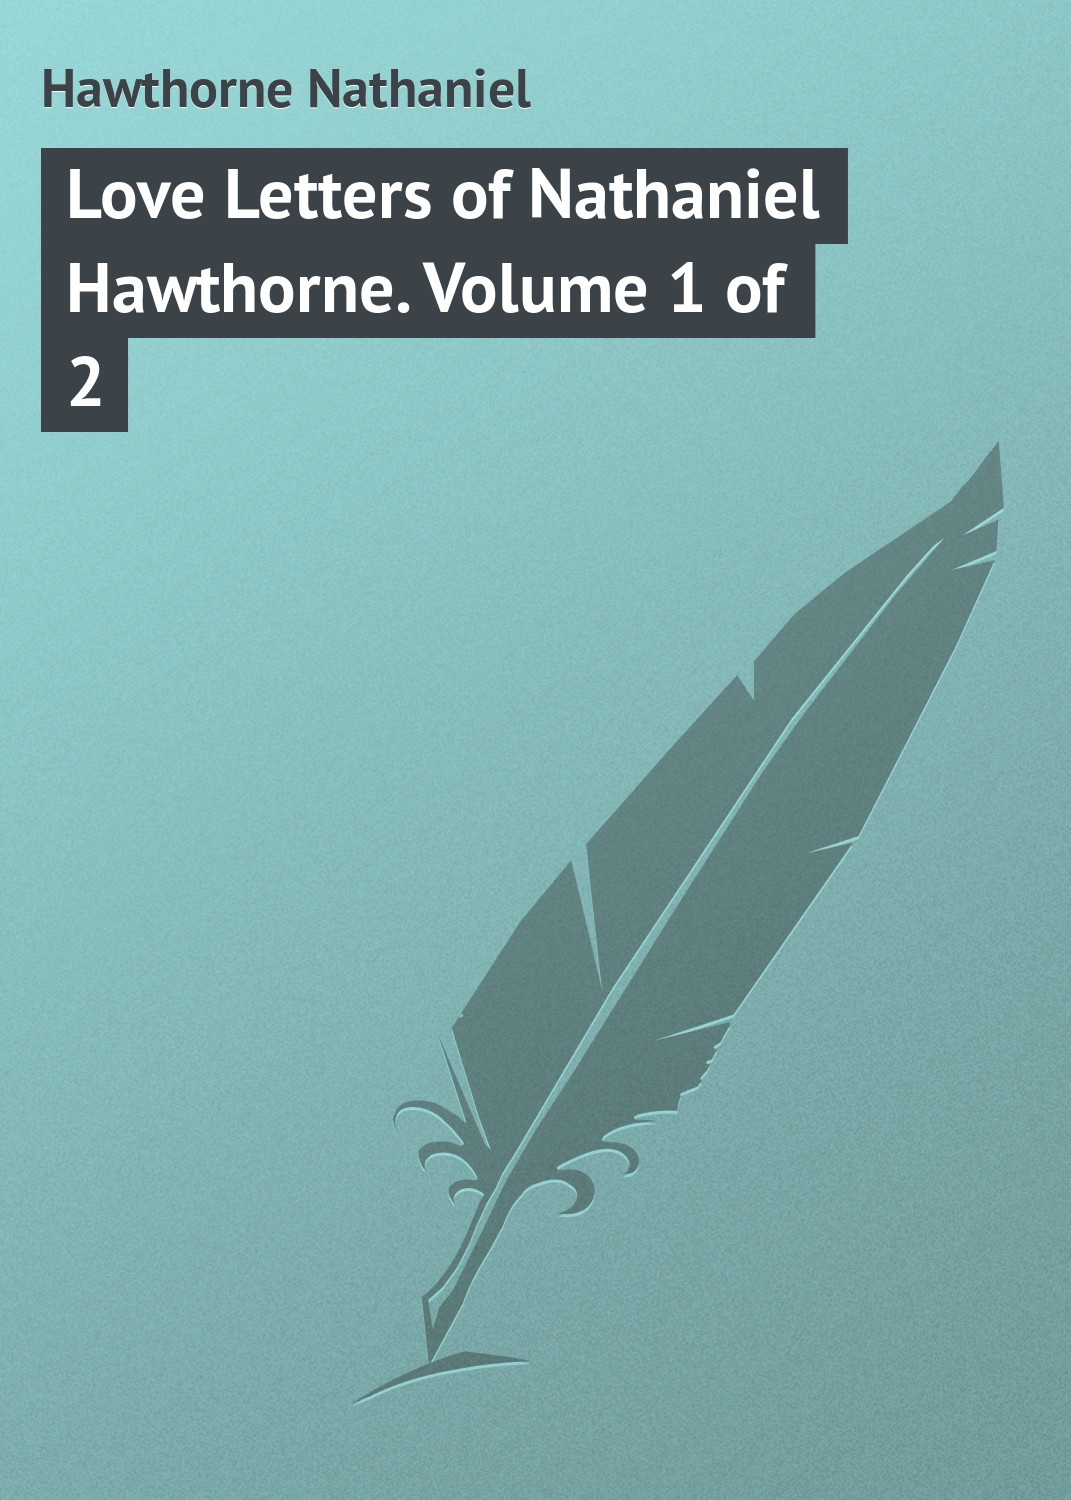 Книга Love Letters of Nathaniel Hawthorne. Volume 1 of 2 из серии , созданная Nathaniel Hawthorne, может относится к жанру Зарубежная классика, Зарубежные любовные романы. Стоимость электронной книги Love Letters of Nathaniel Hawthorne. Volume 1 of 2 с идентификатором 23149603 составляет 5.99 руб.